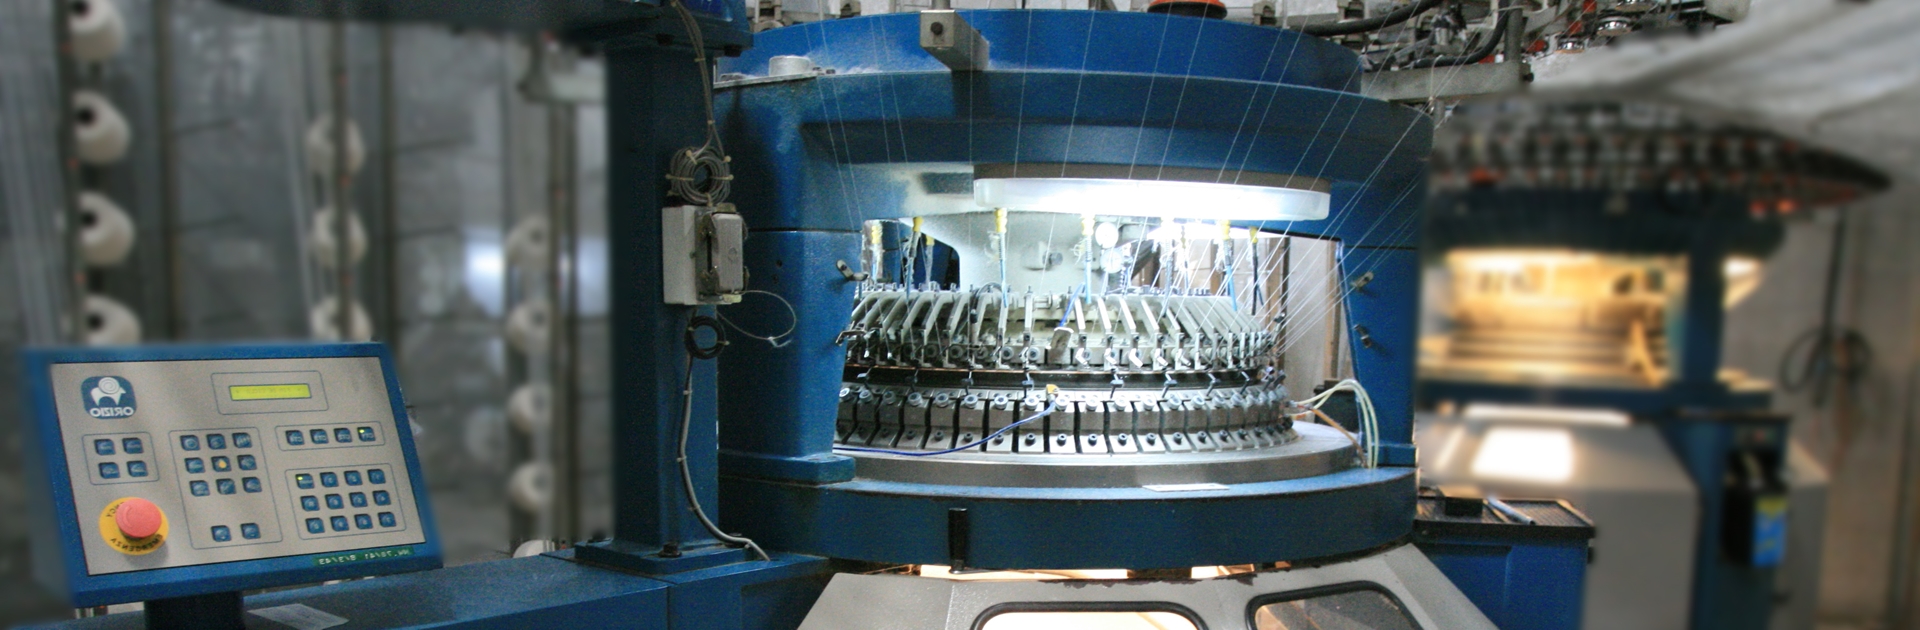 เครื่องทอผ้า SANTEC เครื่องทอผ้าจากไต้หวัน เครื่องทอผ้ามือสอง โรงงานทอผ้ายืด รับทอผ้ายืดทุกชนิด